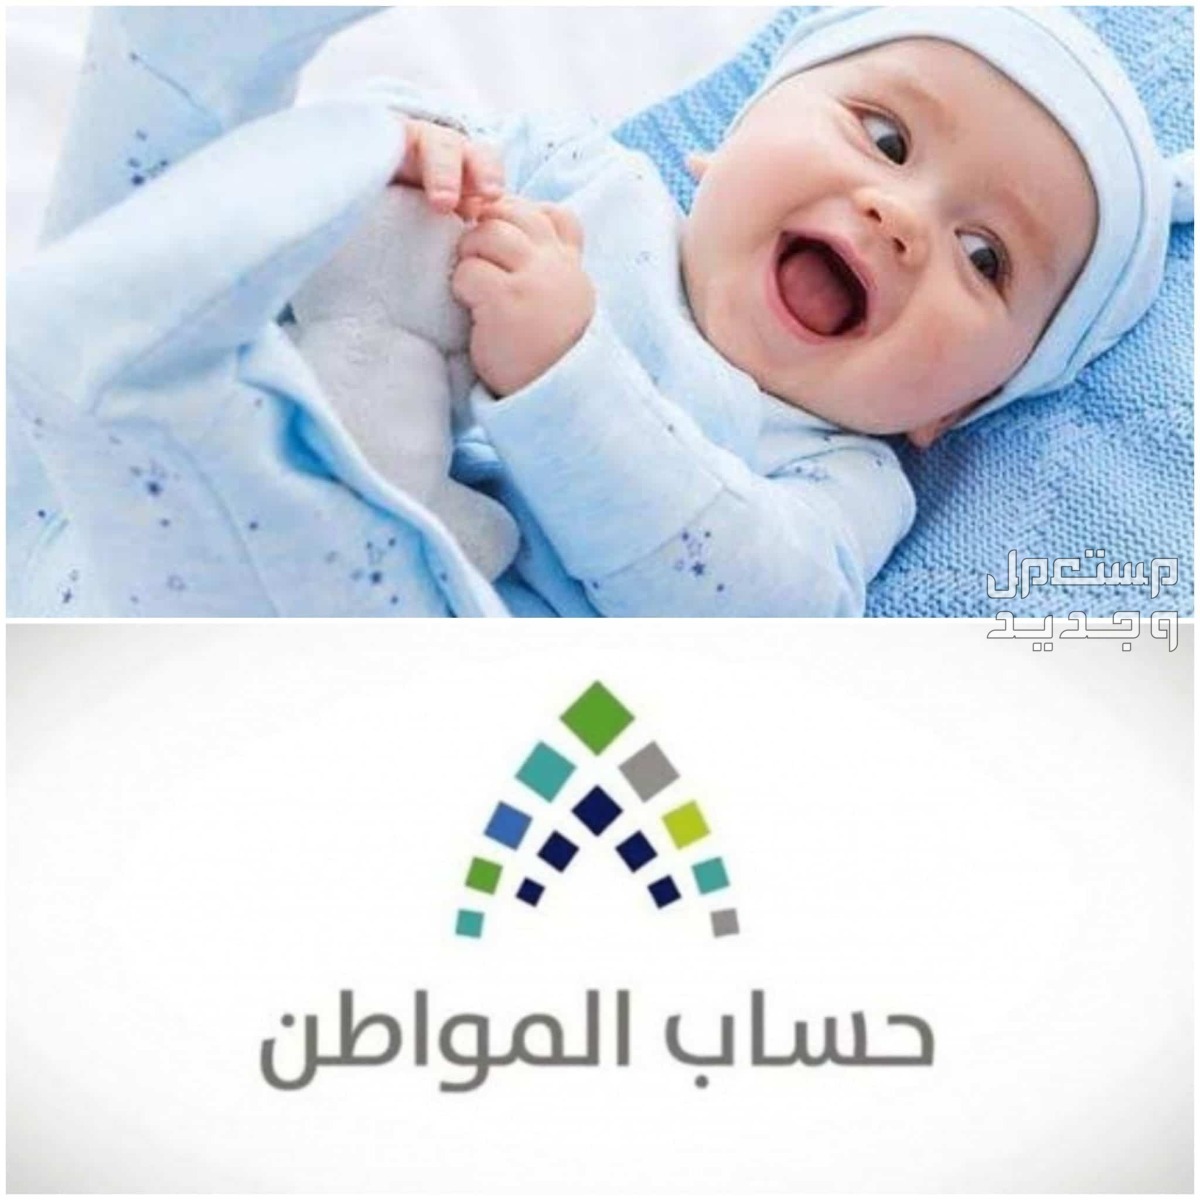 طريقة تسجيل المولود الجديد في حساب المواطن 1445 في تونس تسجيل المولود الجديد في حساب المواطن